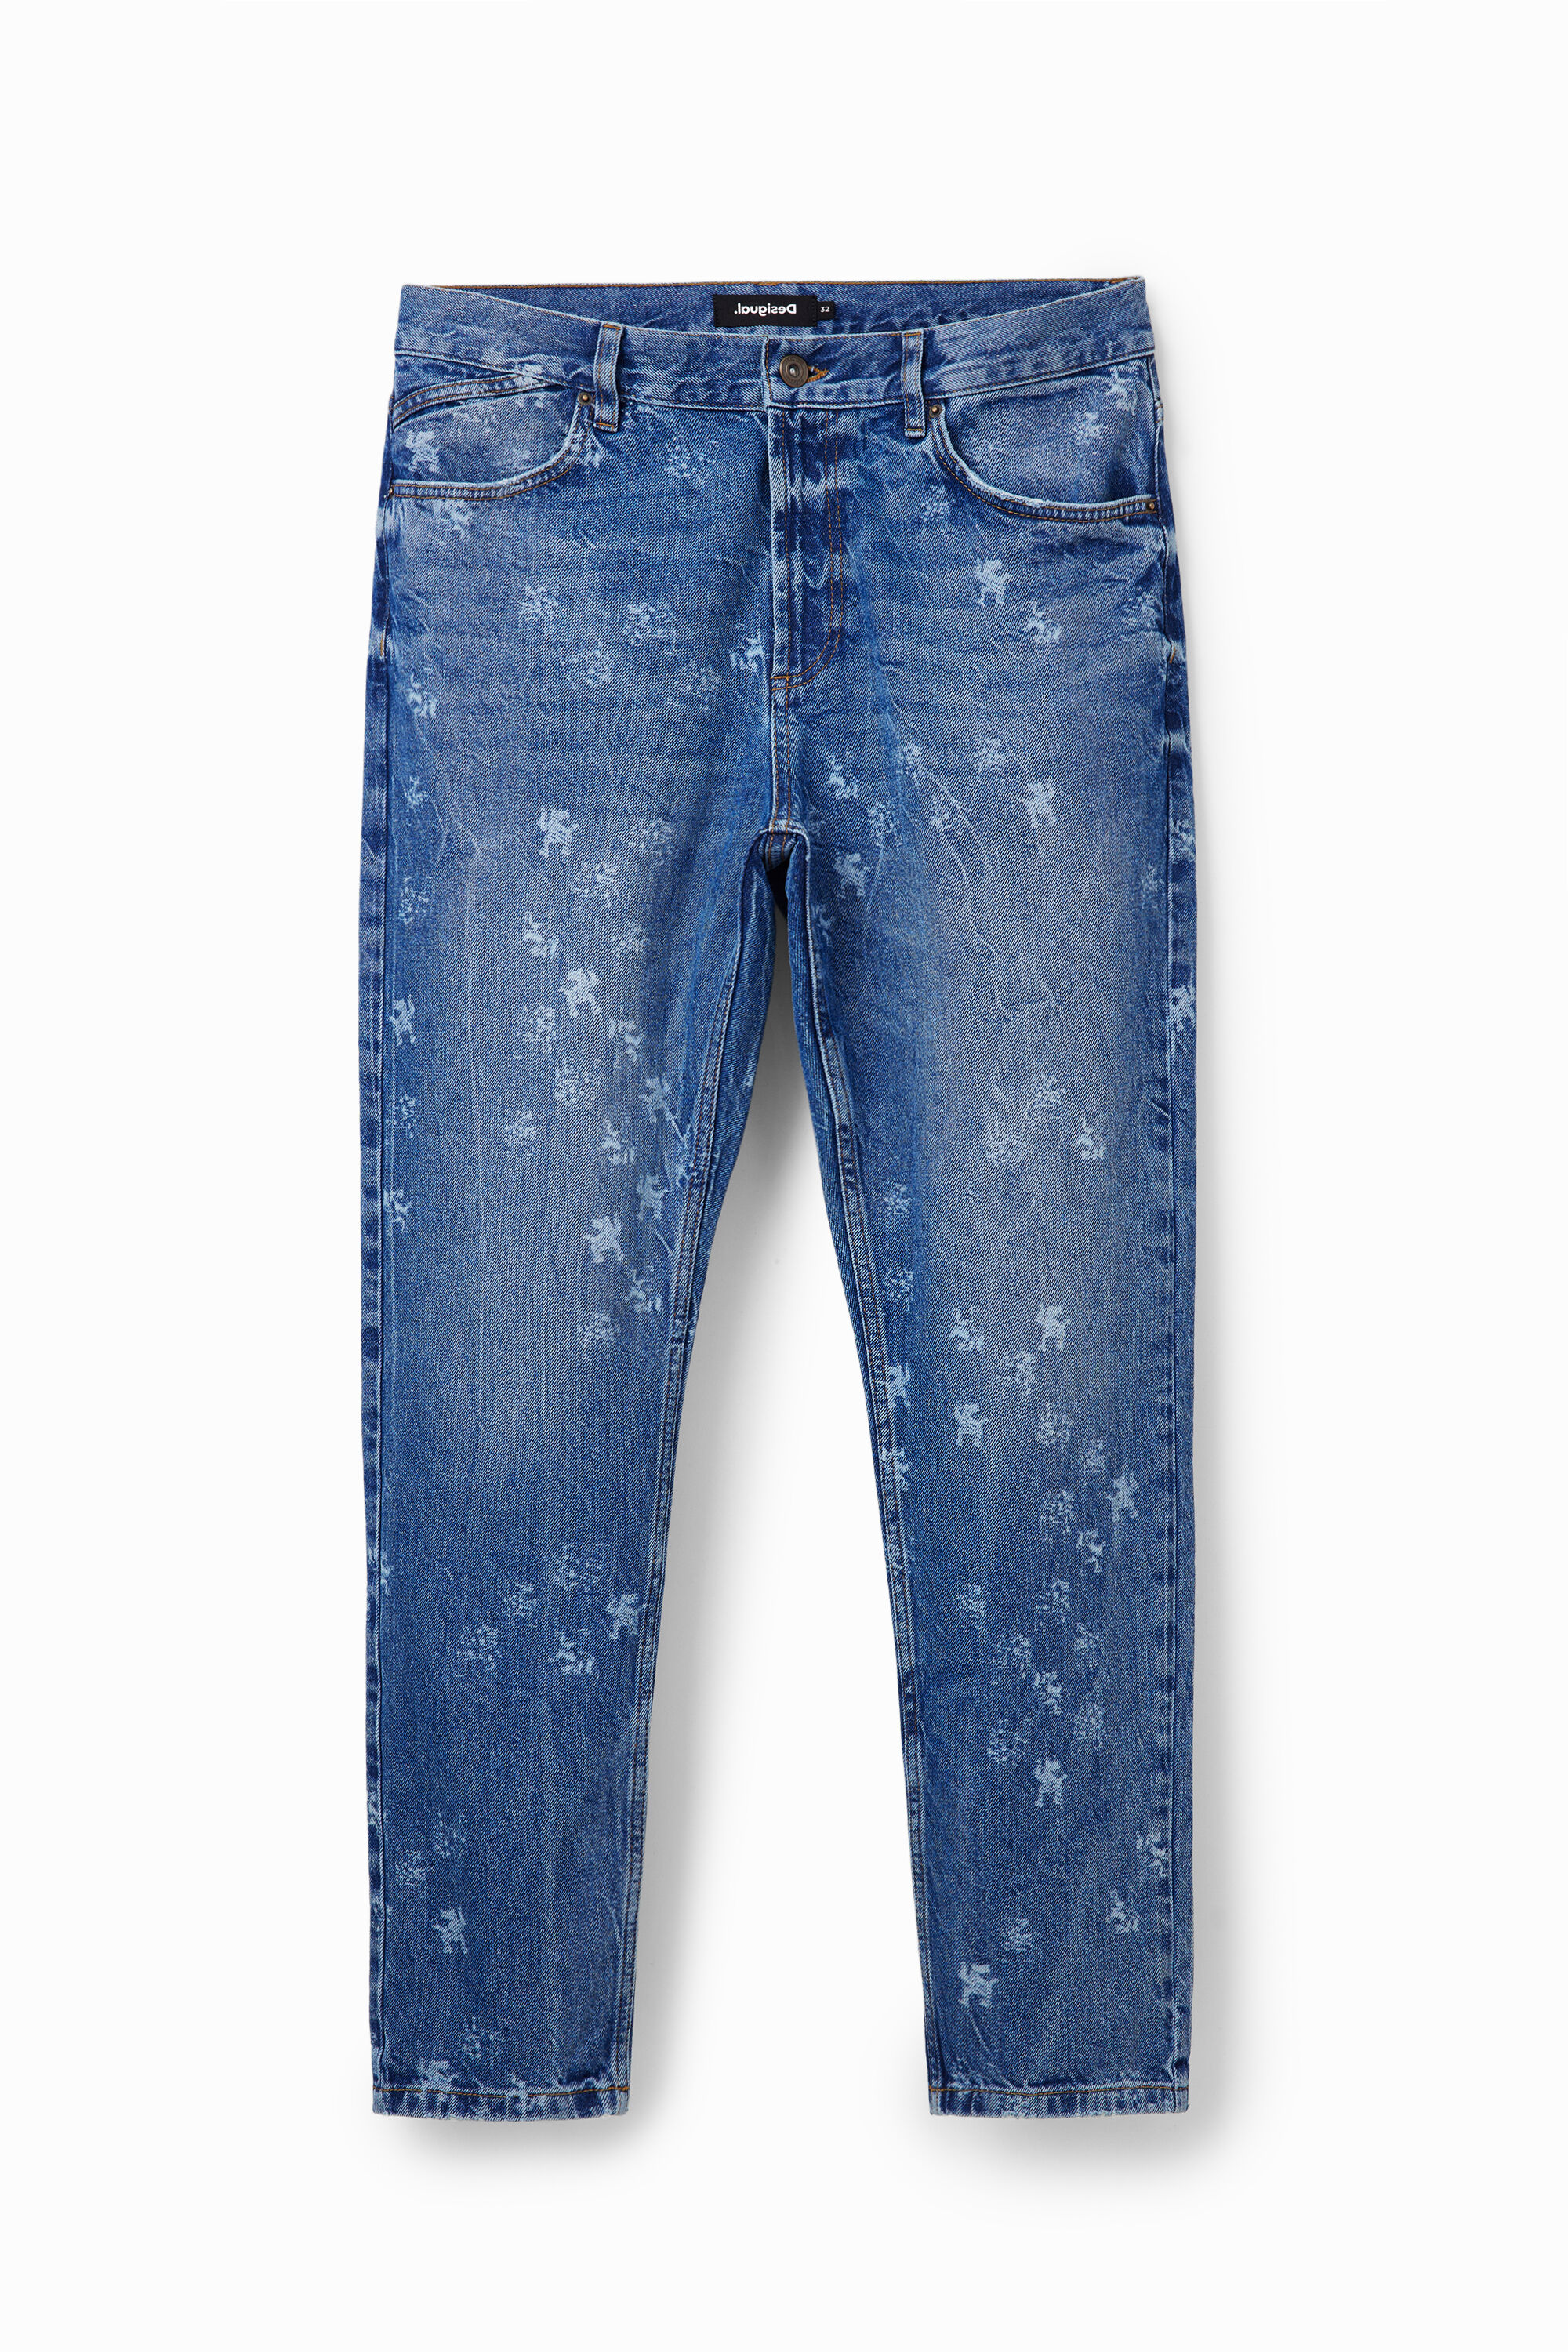 Loose laser print jeans - BLUE - 30